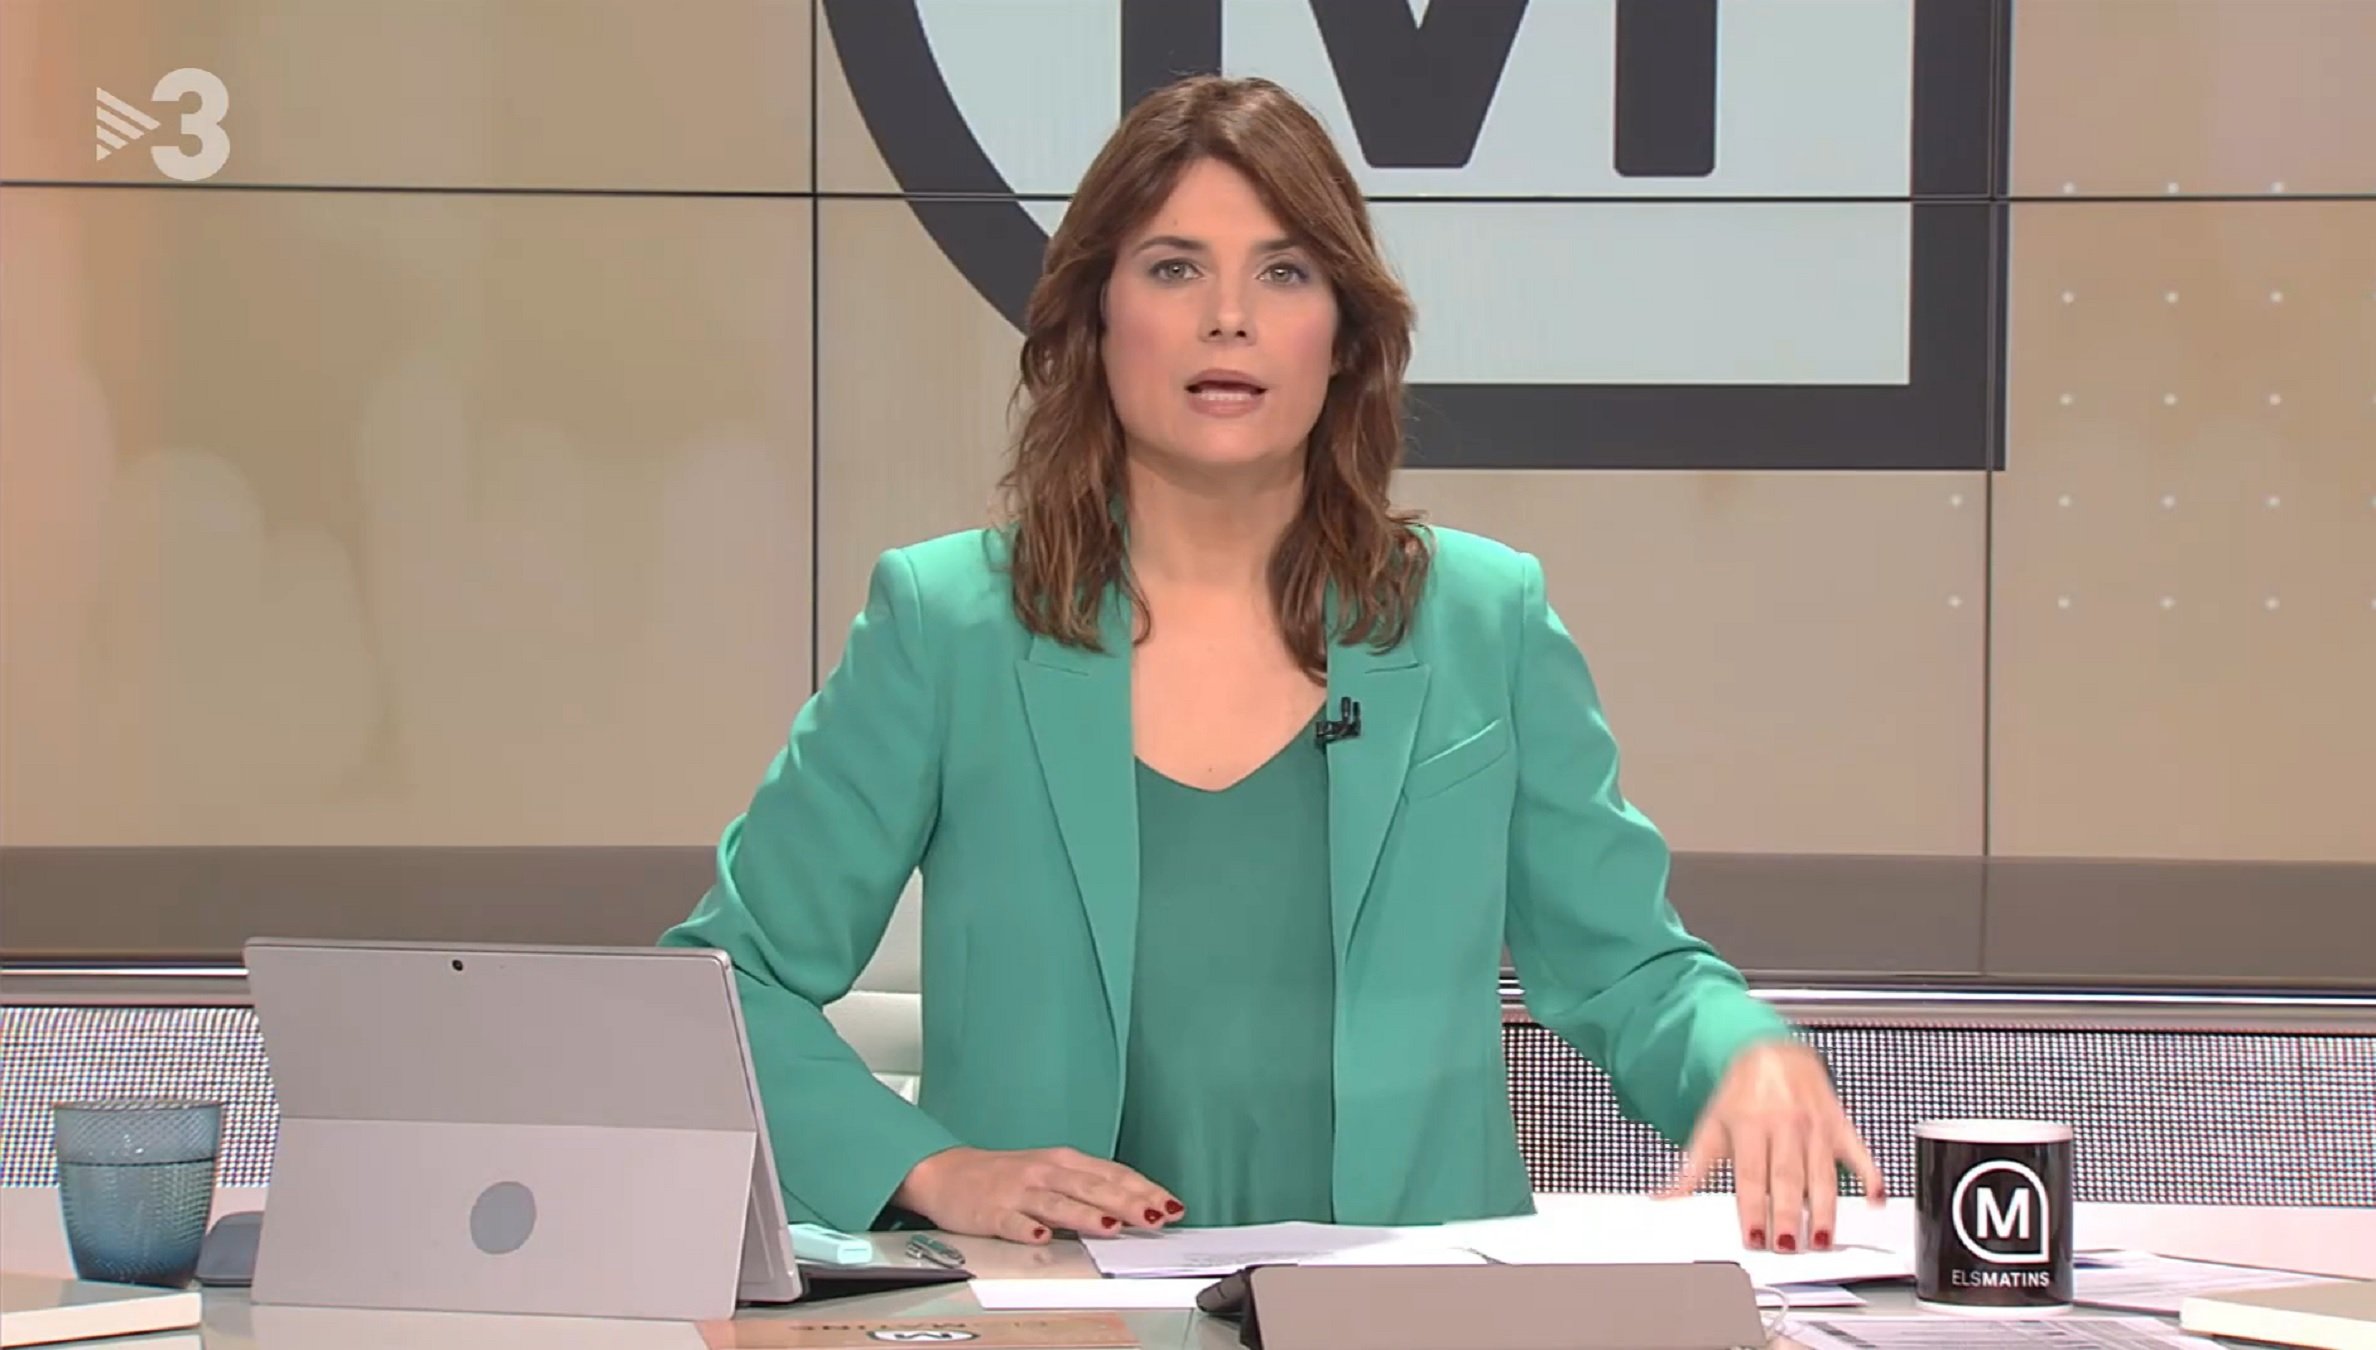 El tertuliano que más cobra de 'Els matins' de TV3 es castellanohablante: 11.500 euros